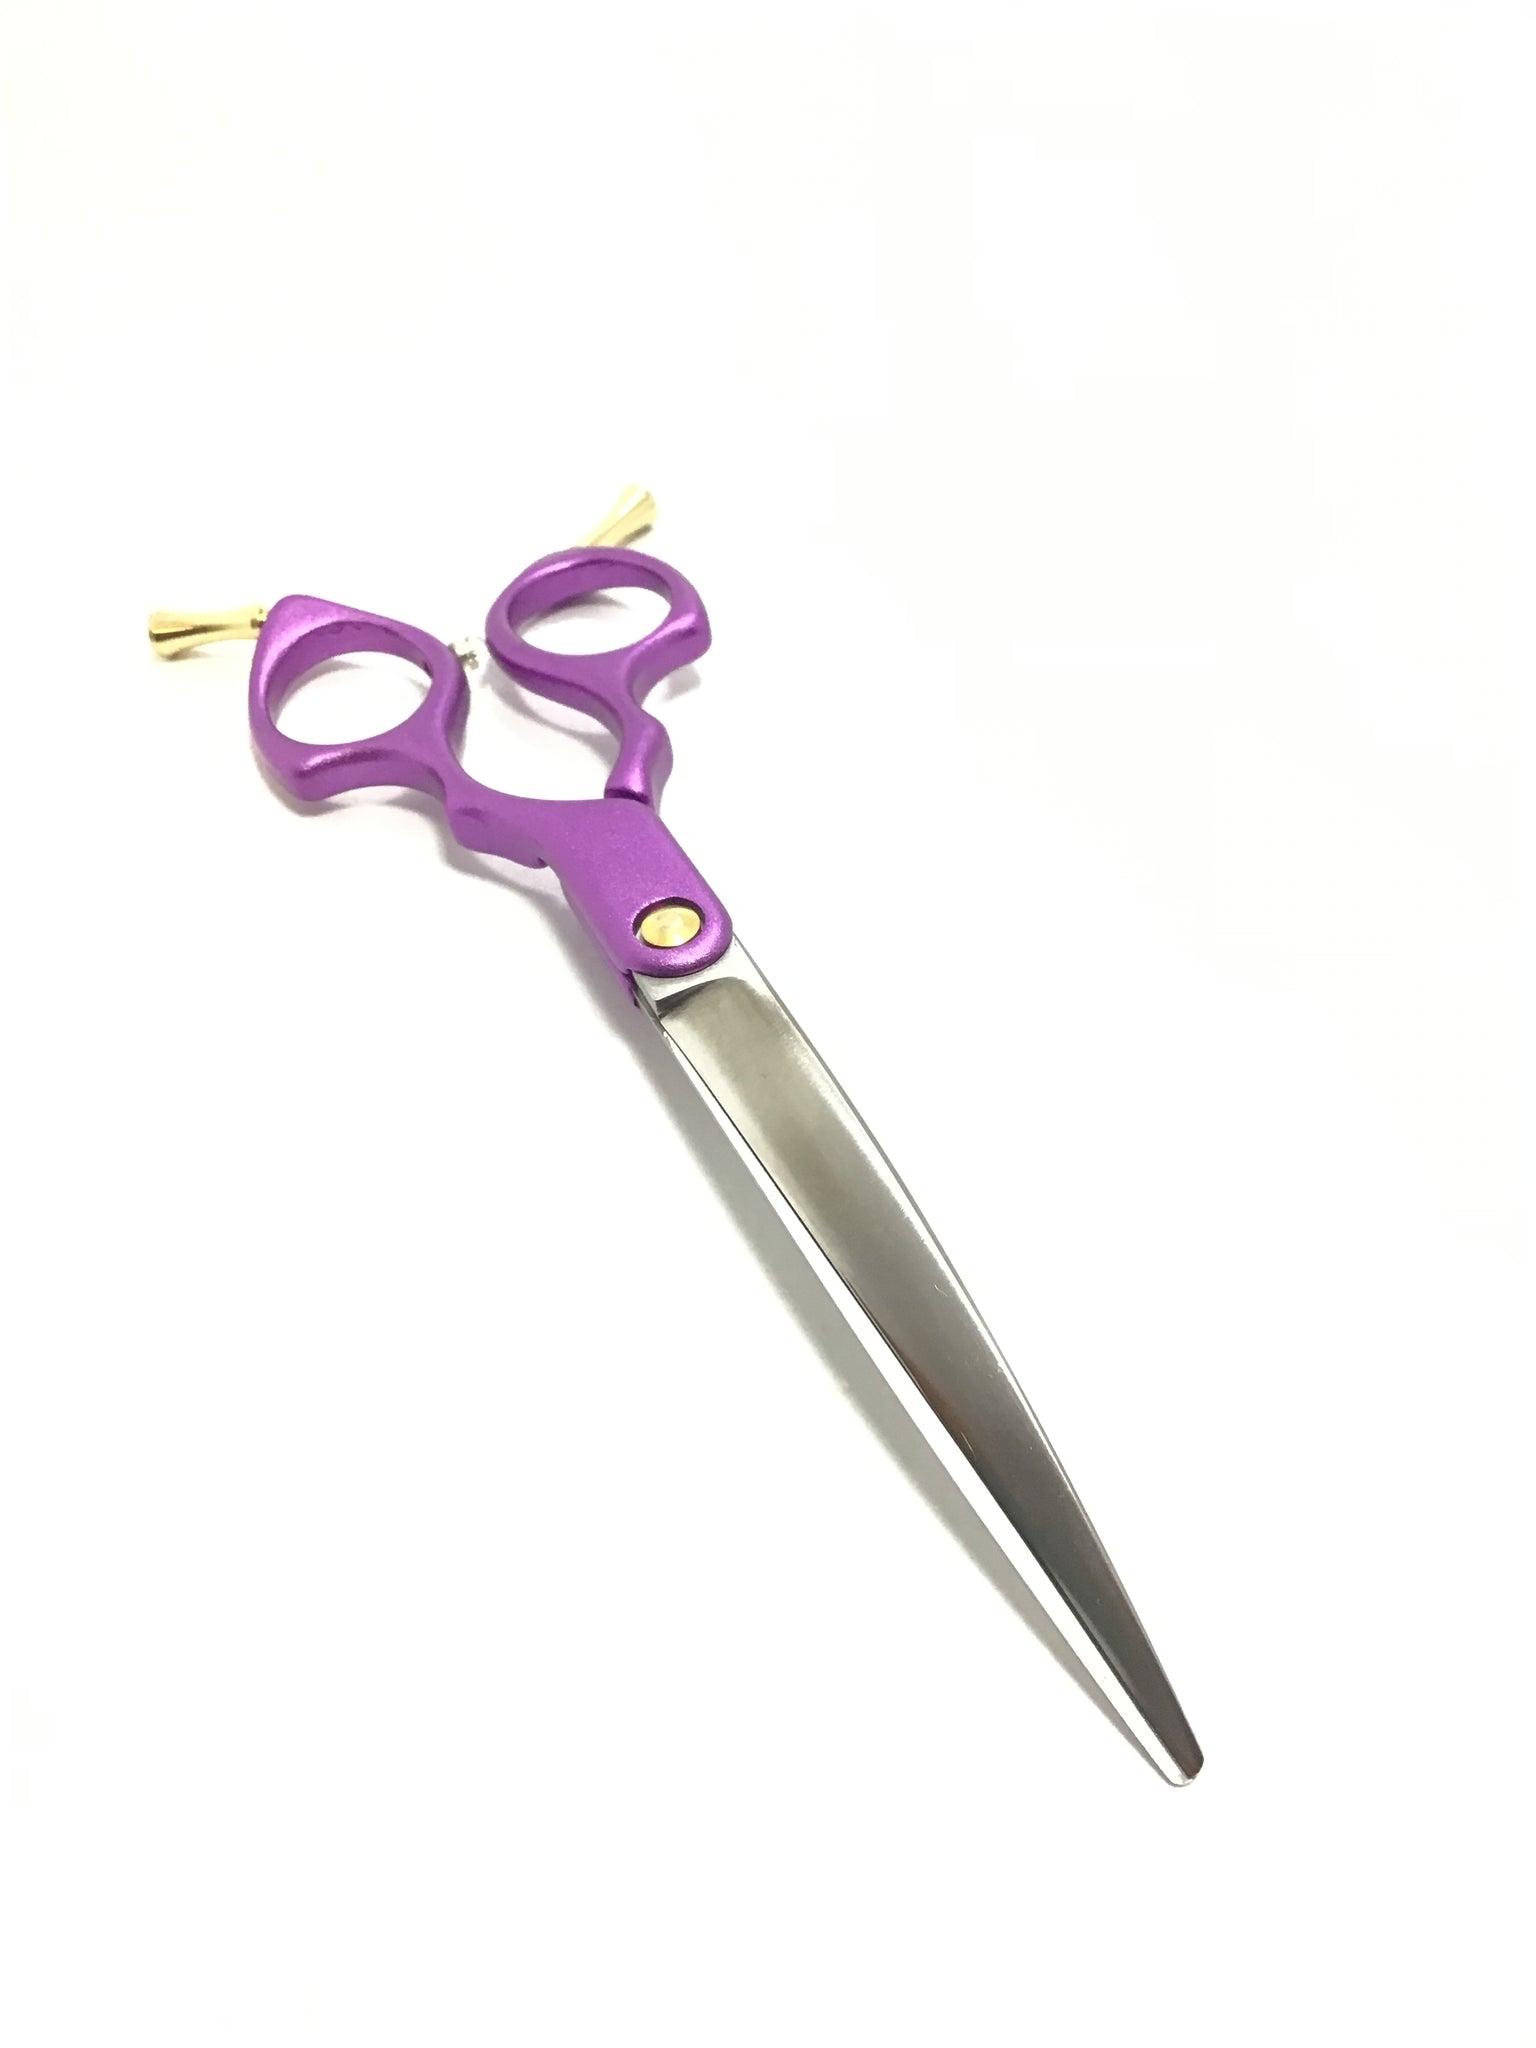 Enday 8 Scissors, Purple